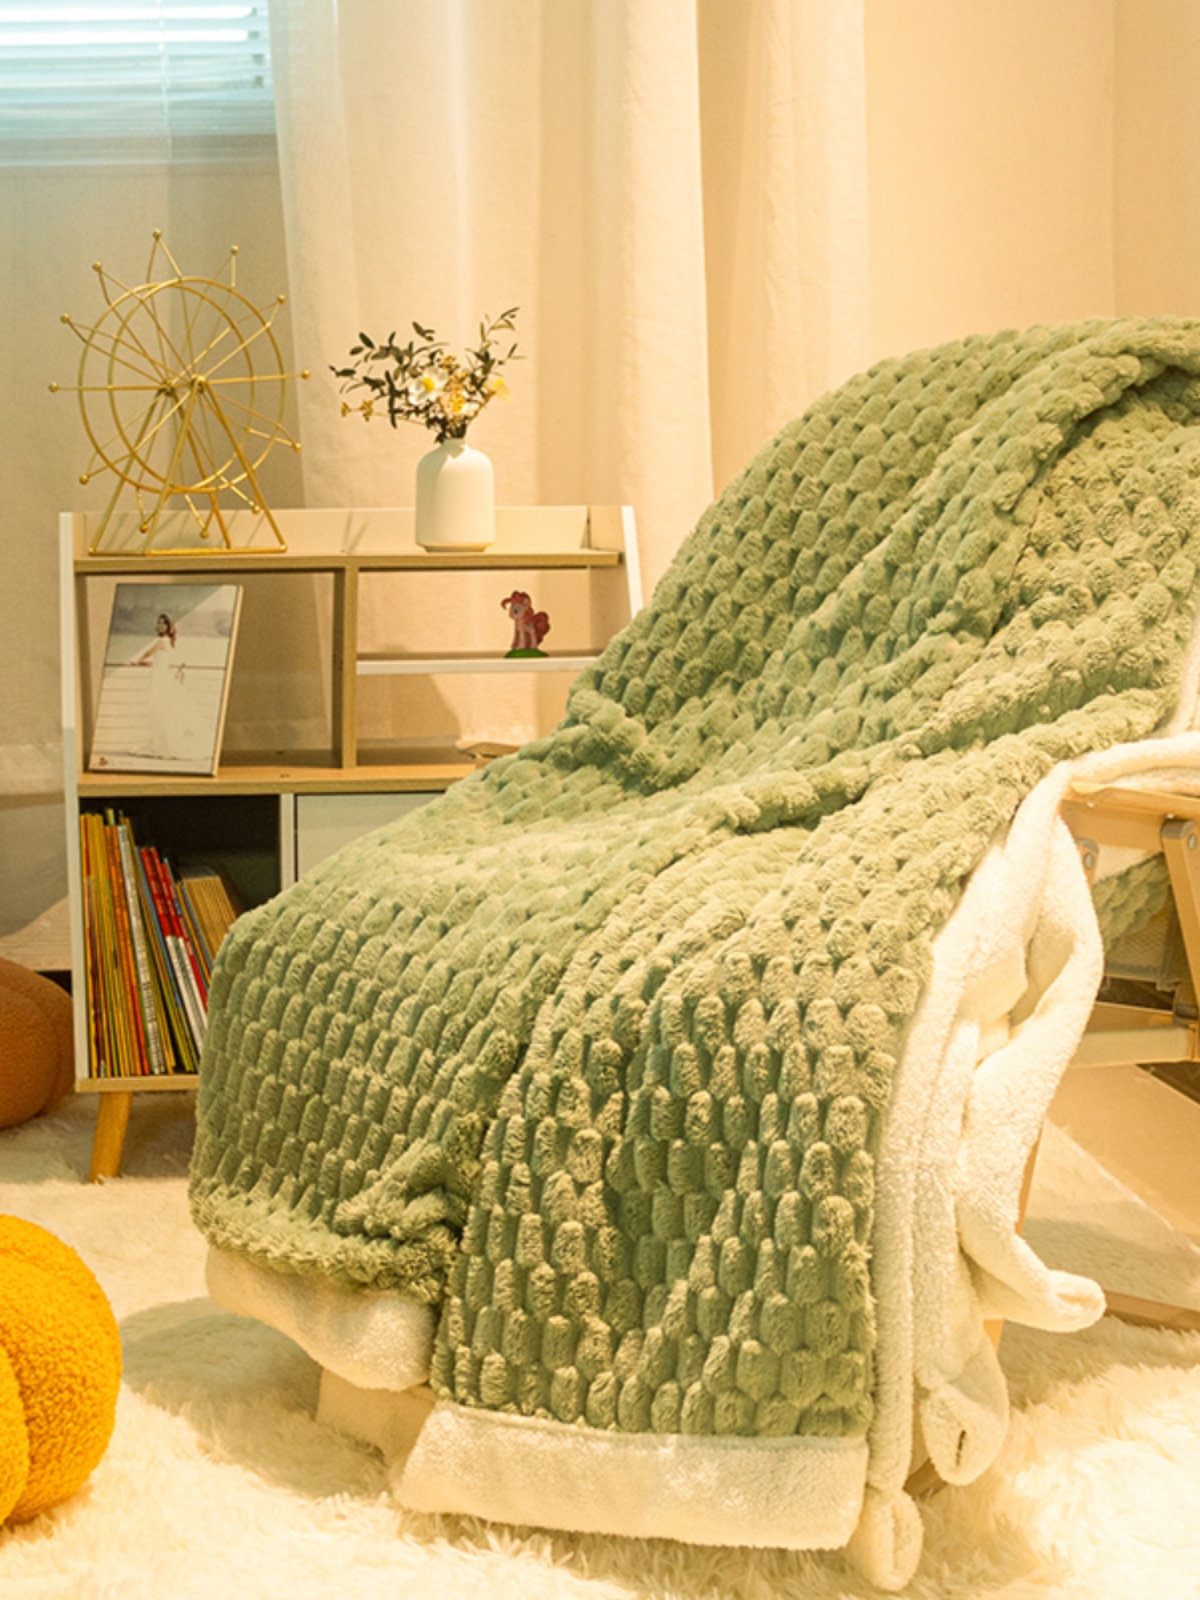 舒適柔軟加厚羊羔絨毛毯四季通用雙層設計簡約現代風格適合居家辦公午睡